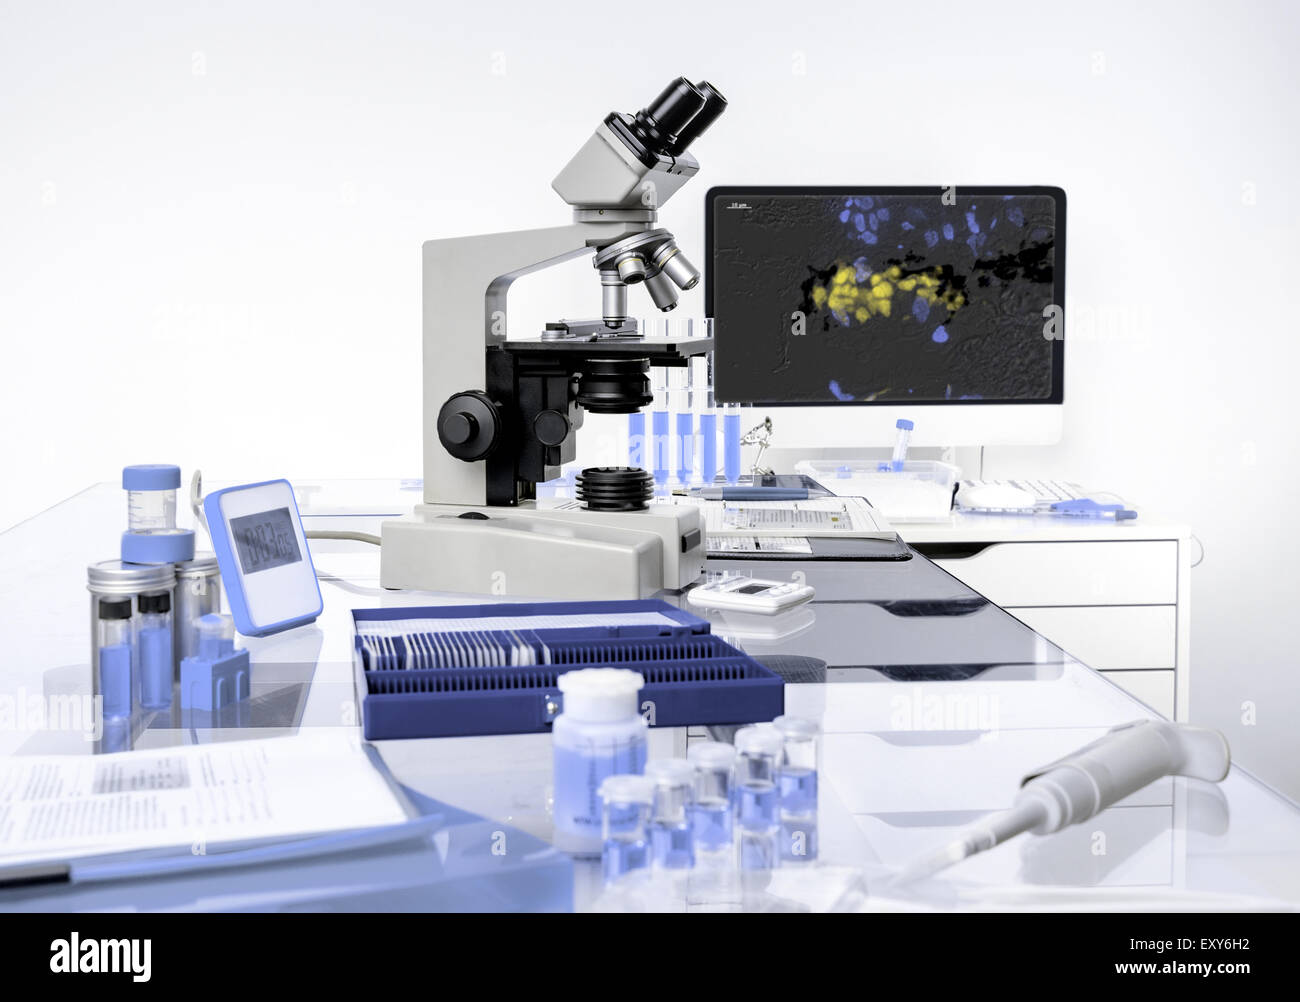 Station de travail microscopique, formation scientifique dans des tons blancs et lilas Banque D'Images